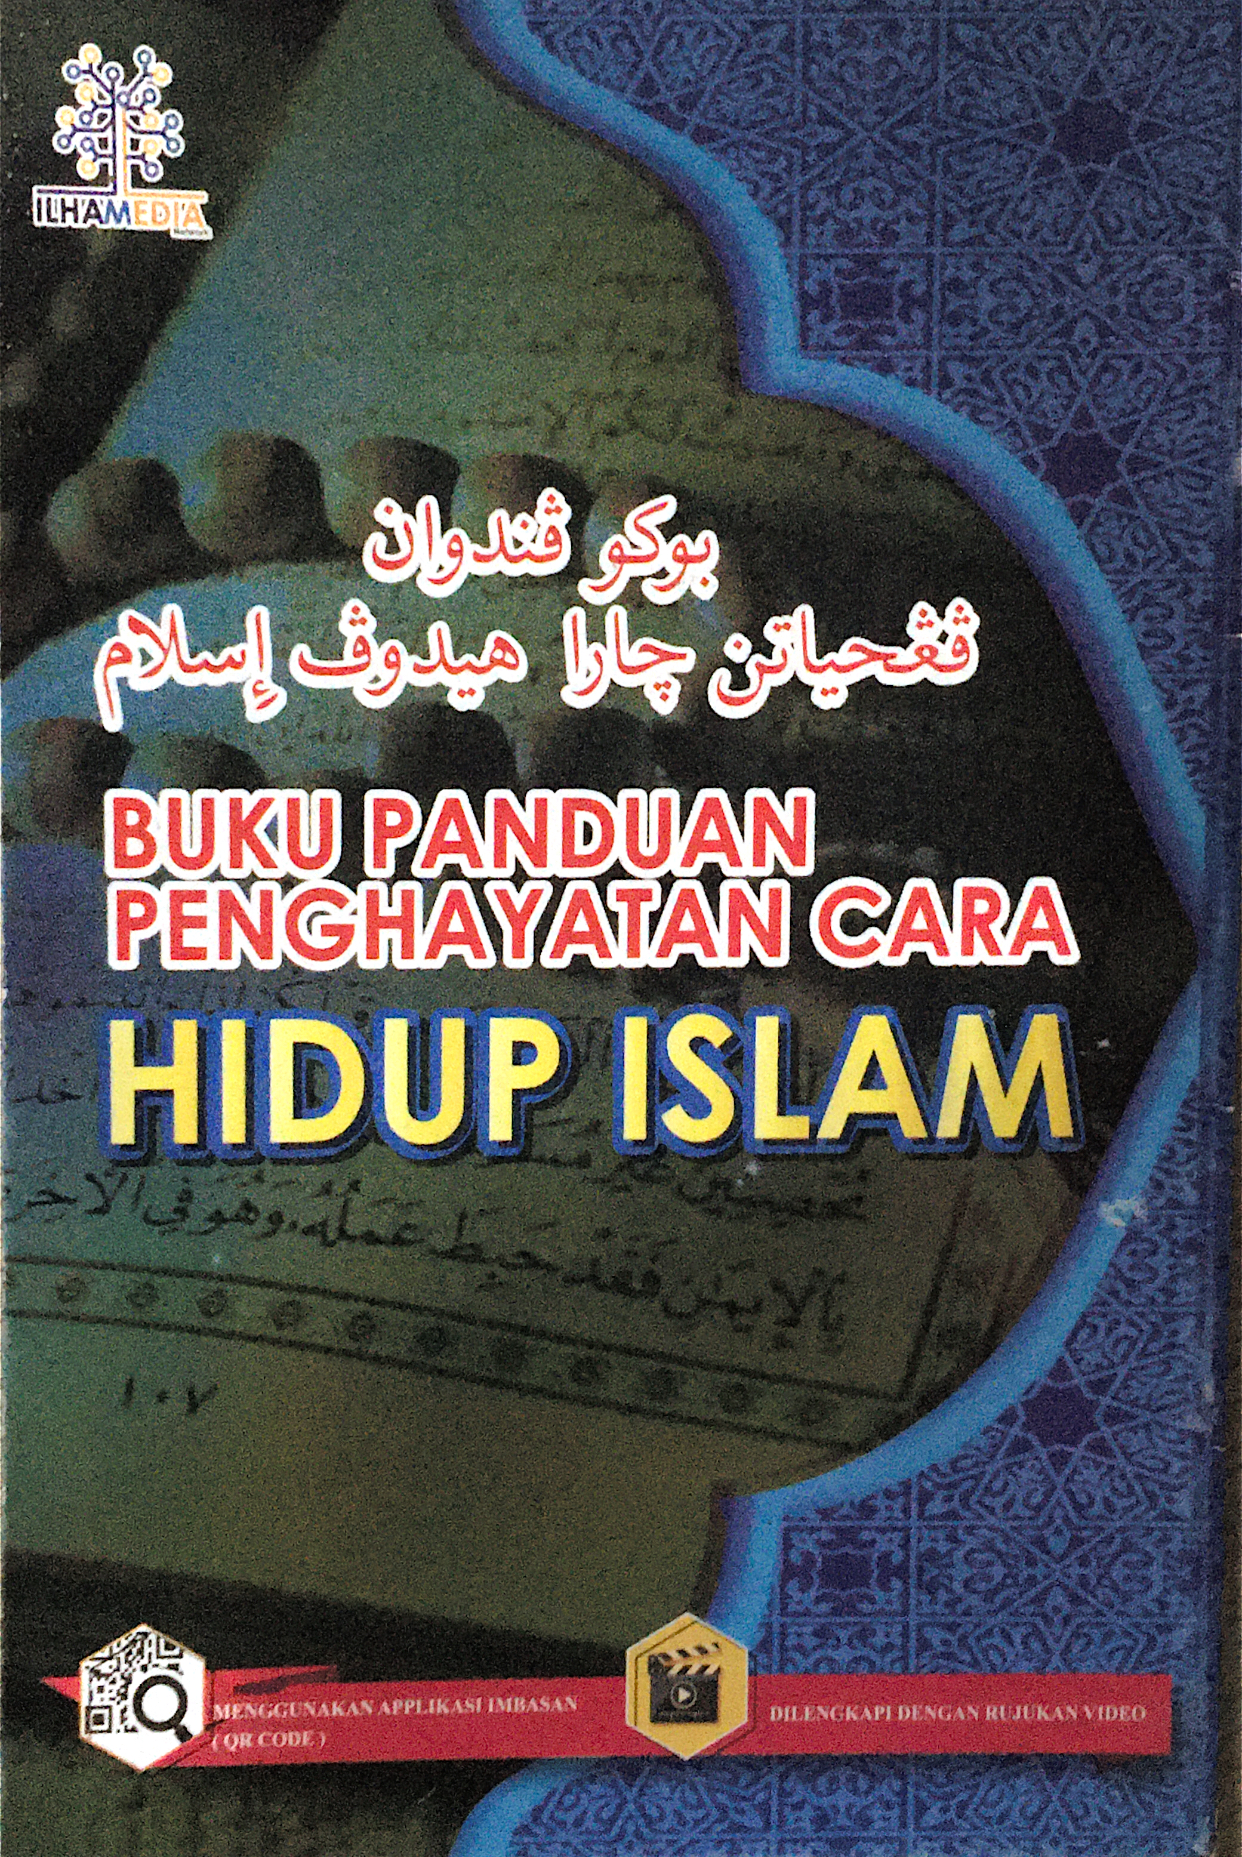 Buku panduan penghayatan cara hidup islam